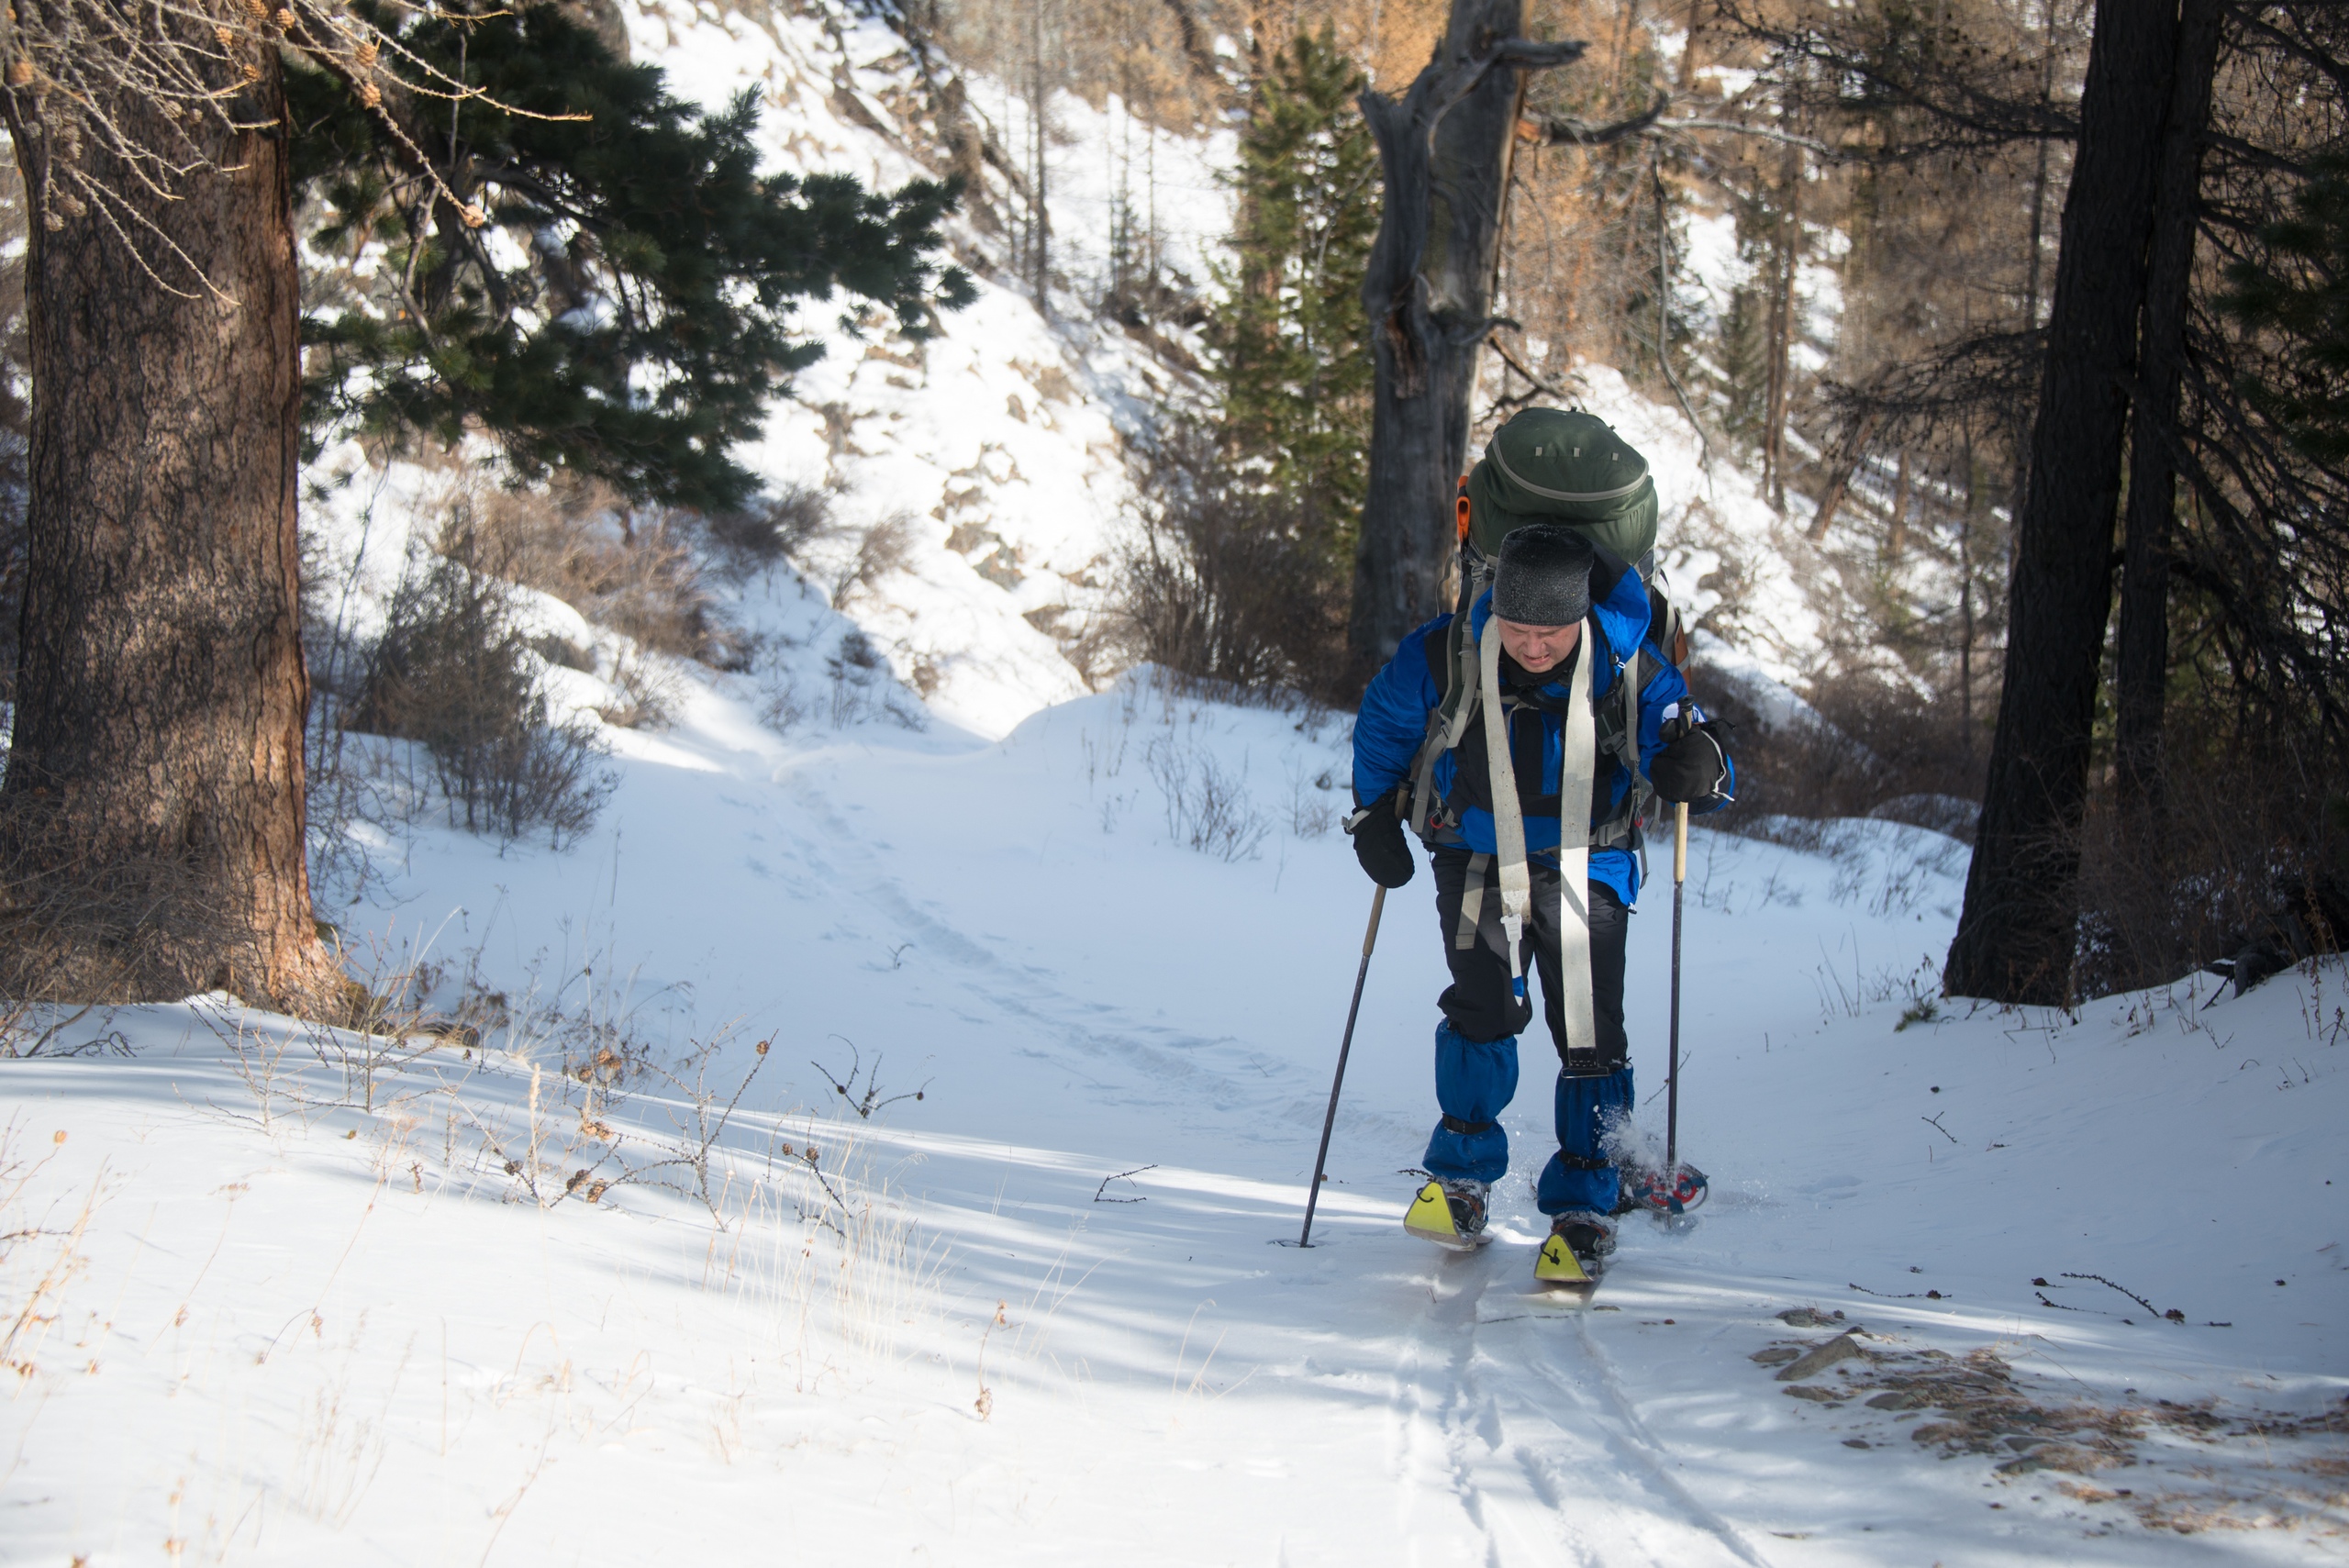 Шифонеры или композитные лыжи с дубовым скользяком специально для туризма